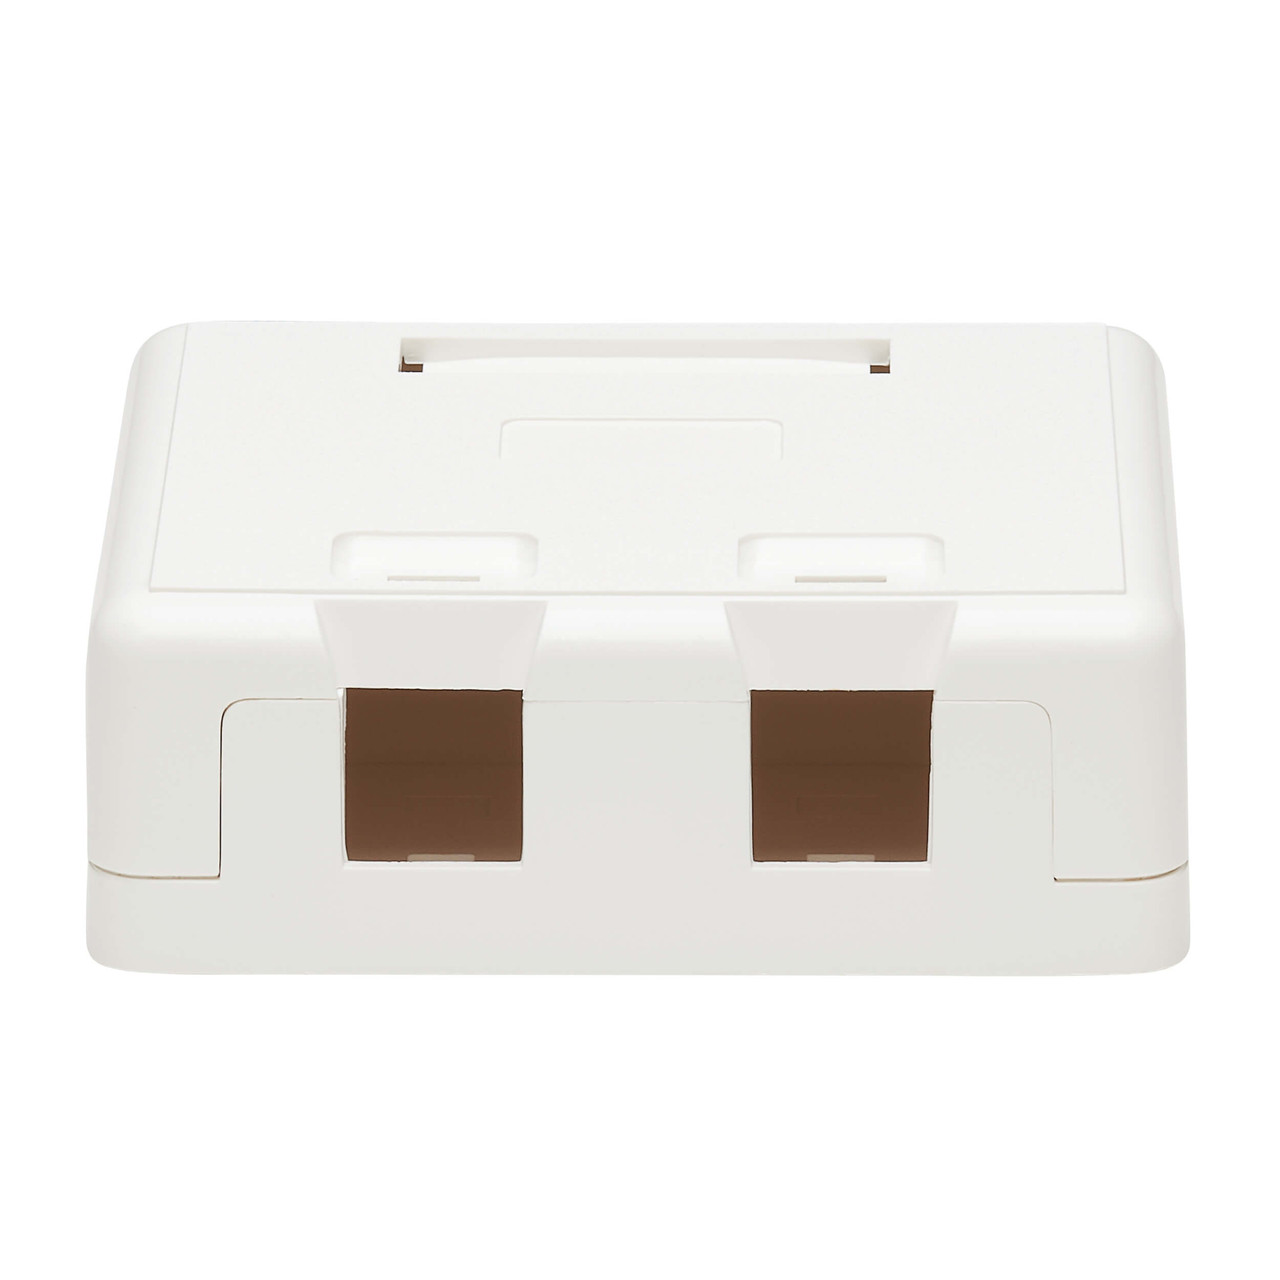 Surface-Mount Box for Keystone Jacks - 2 Ports, White